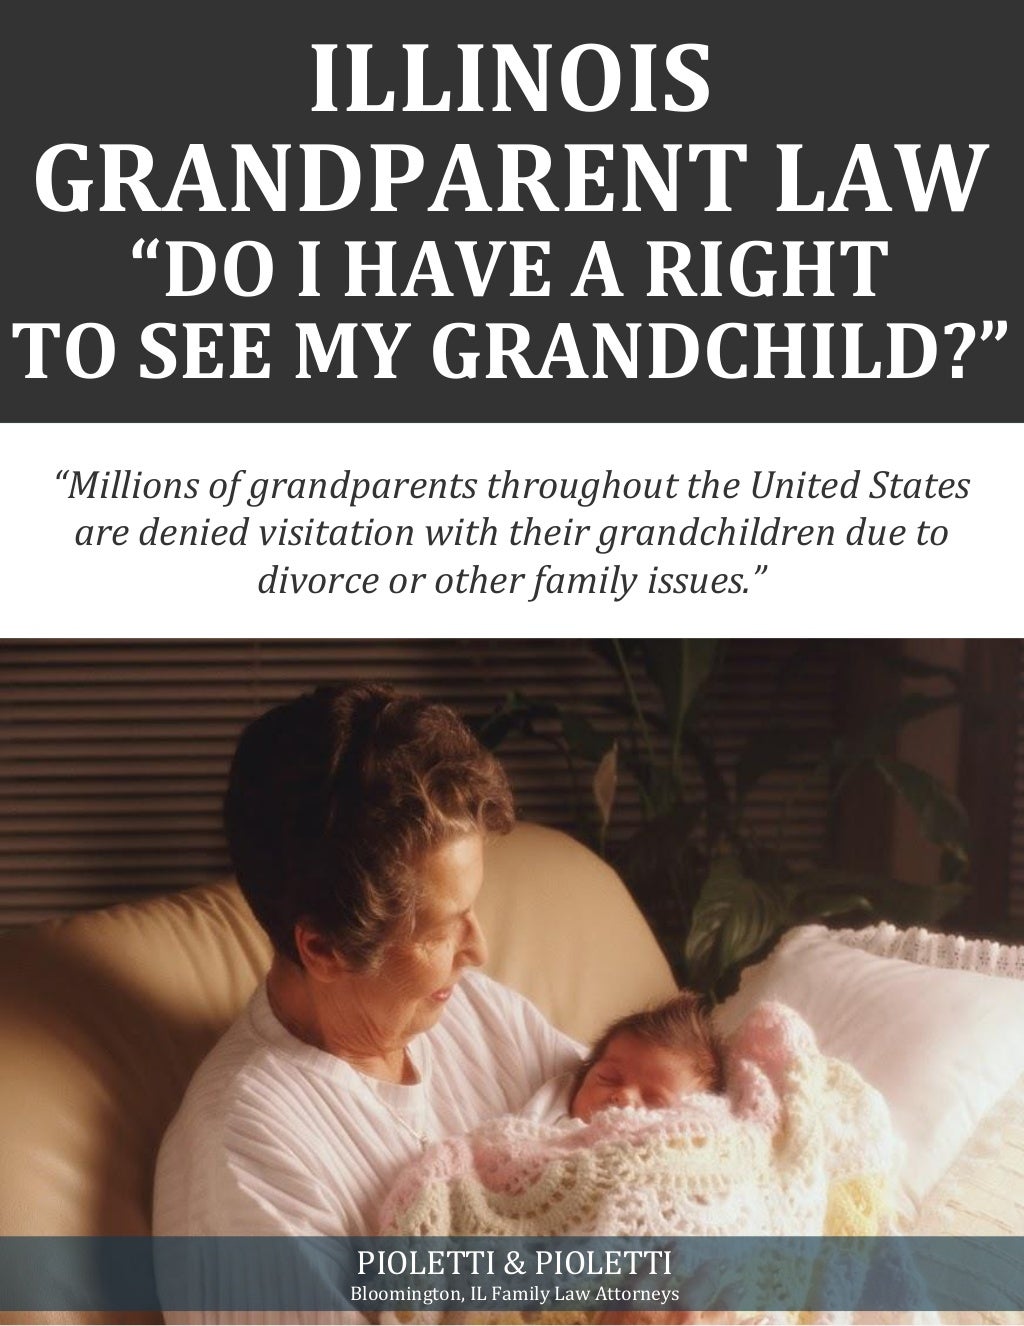 Illinois grandparent law right see grandchild